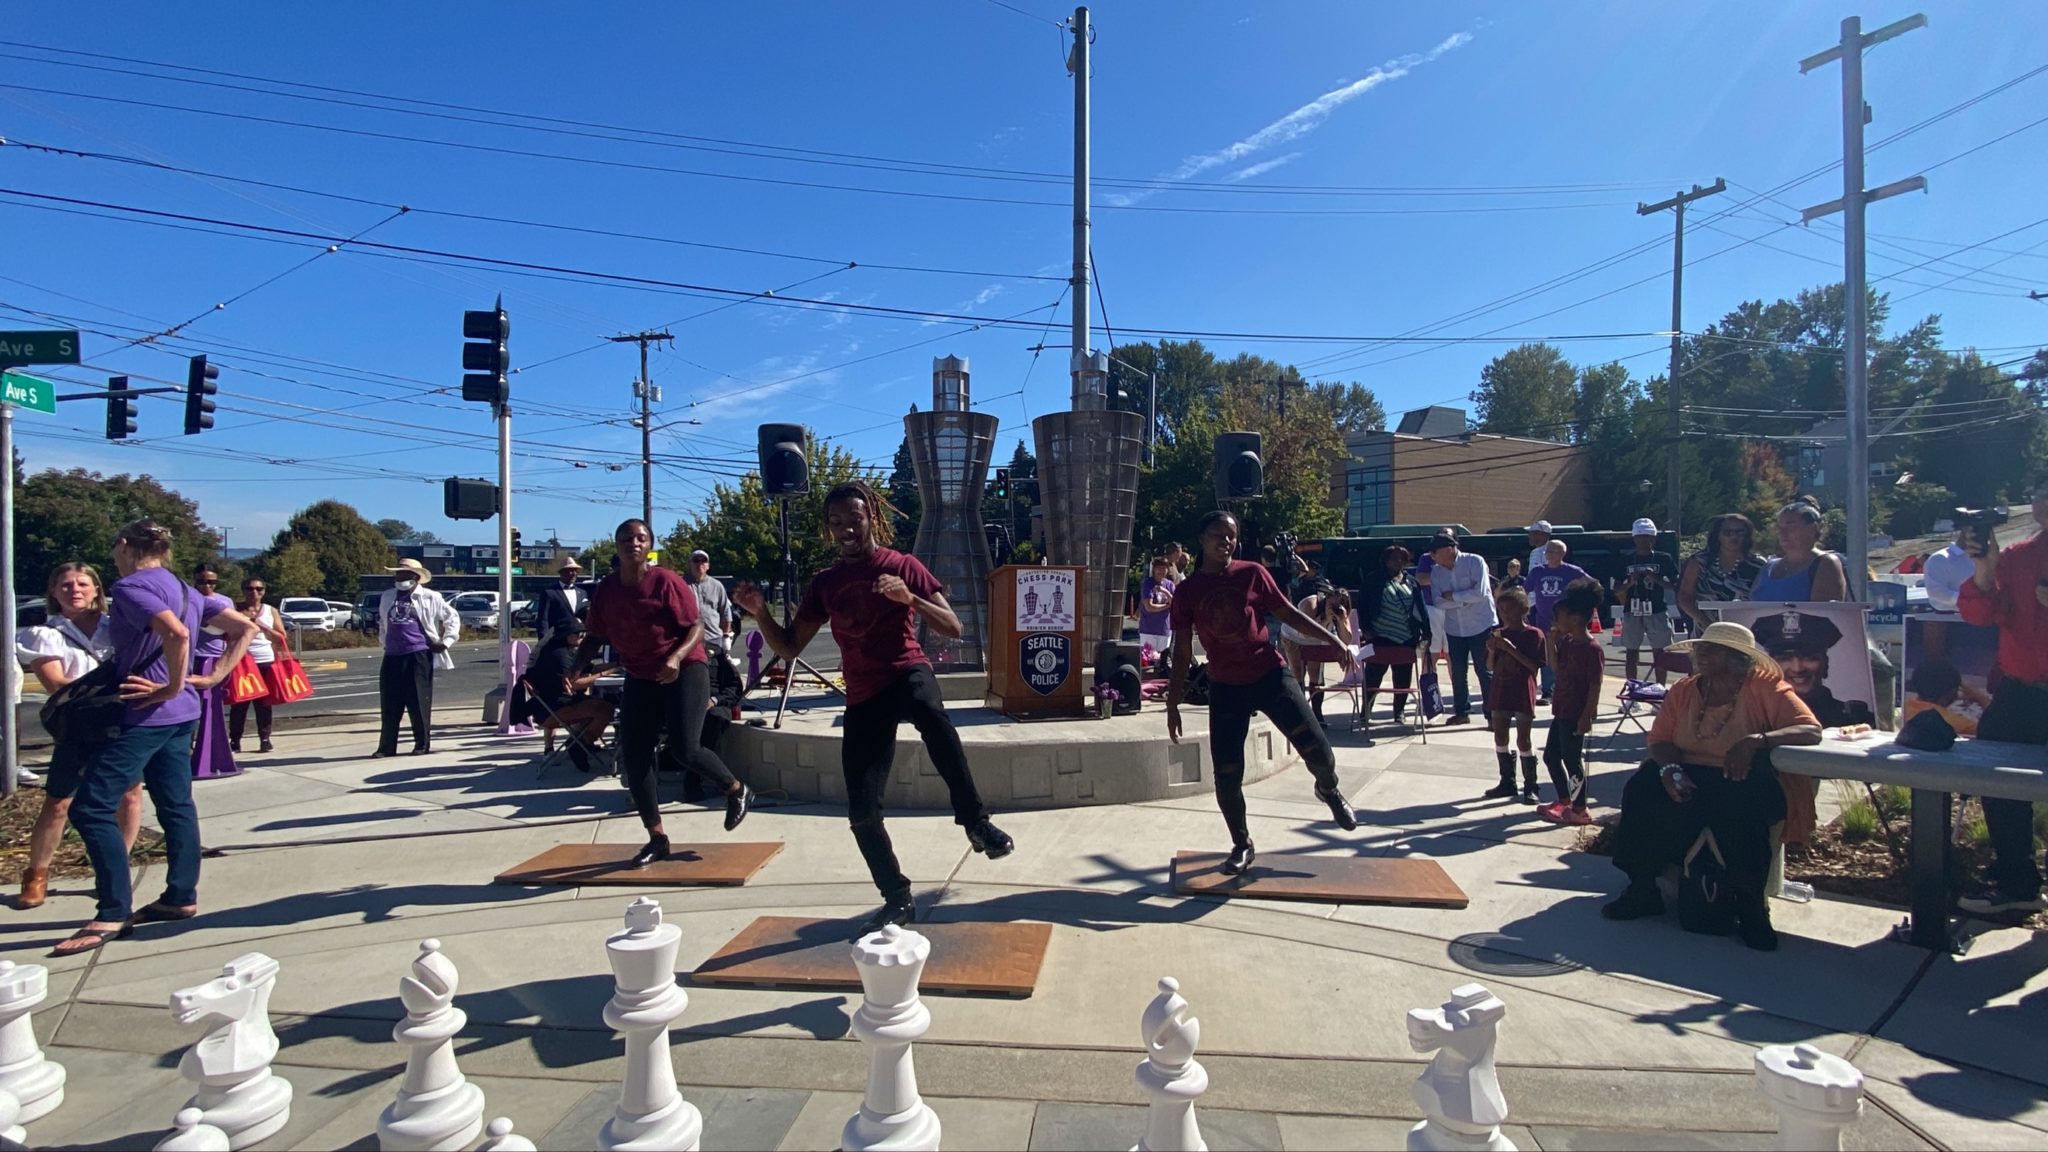 นักเต้น Northwest Tap Connection แสดงที่สวนสาธารณะแห่งใหม่ ซึ่งเป็นส่วนหนึ่งของการเฉลิมฉลองของชุมชน  นักเต้นแท็ปสามคนกำลังเต้นรำบนกระดานไม้ โดยมีหมากรุกชิ้นใหญ่อยู่เบื้องหน้า และผู้คนกำลังชมการแสดง